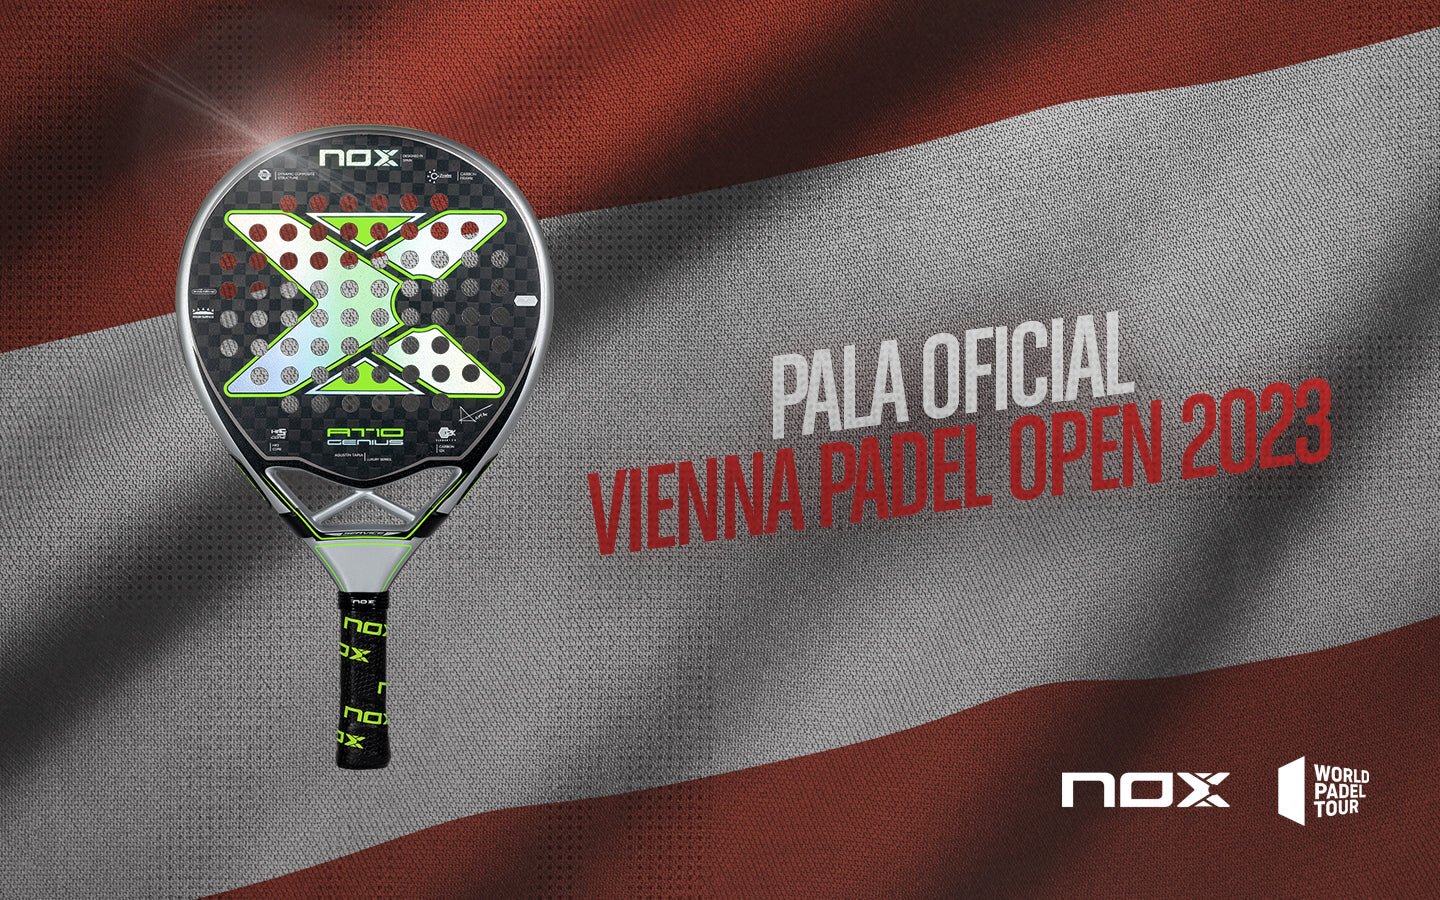 NOX repite como Pala Oficial del WPT Vienna Padel Open 1000 - NOX